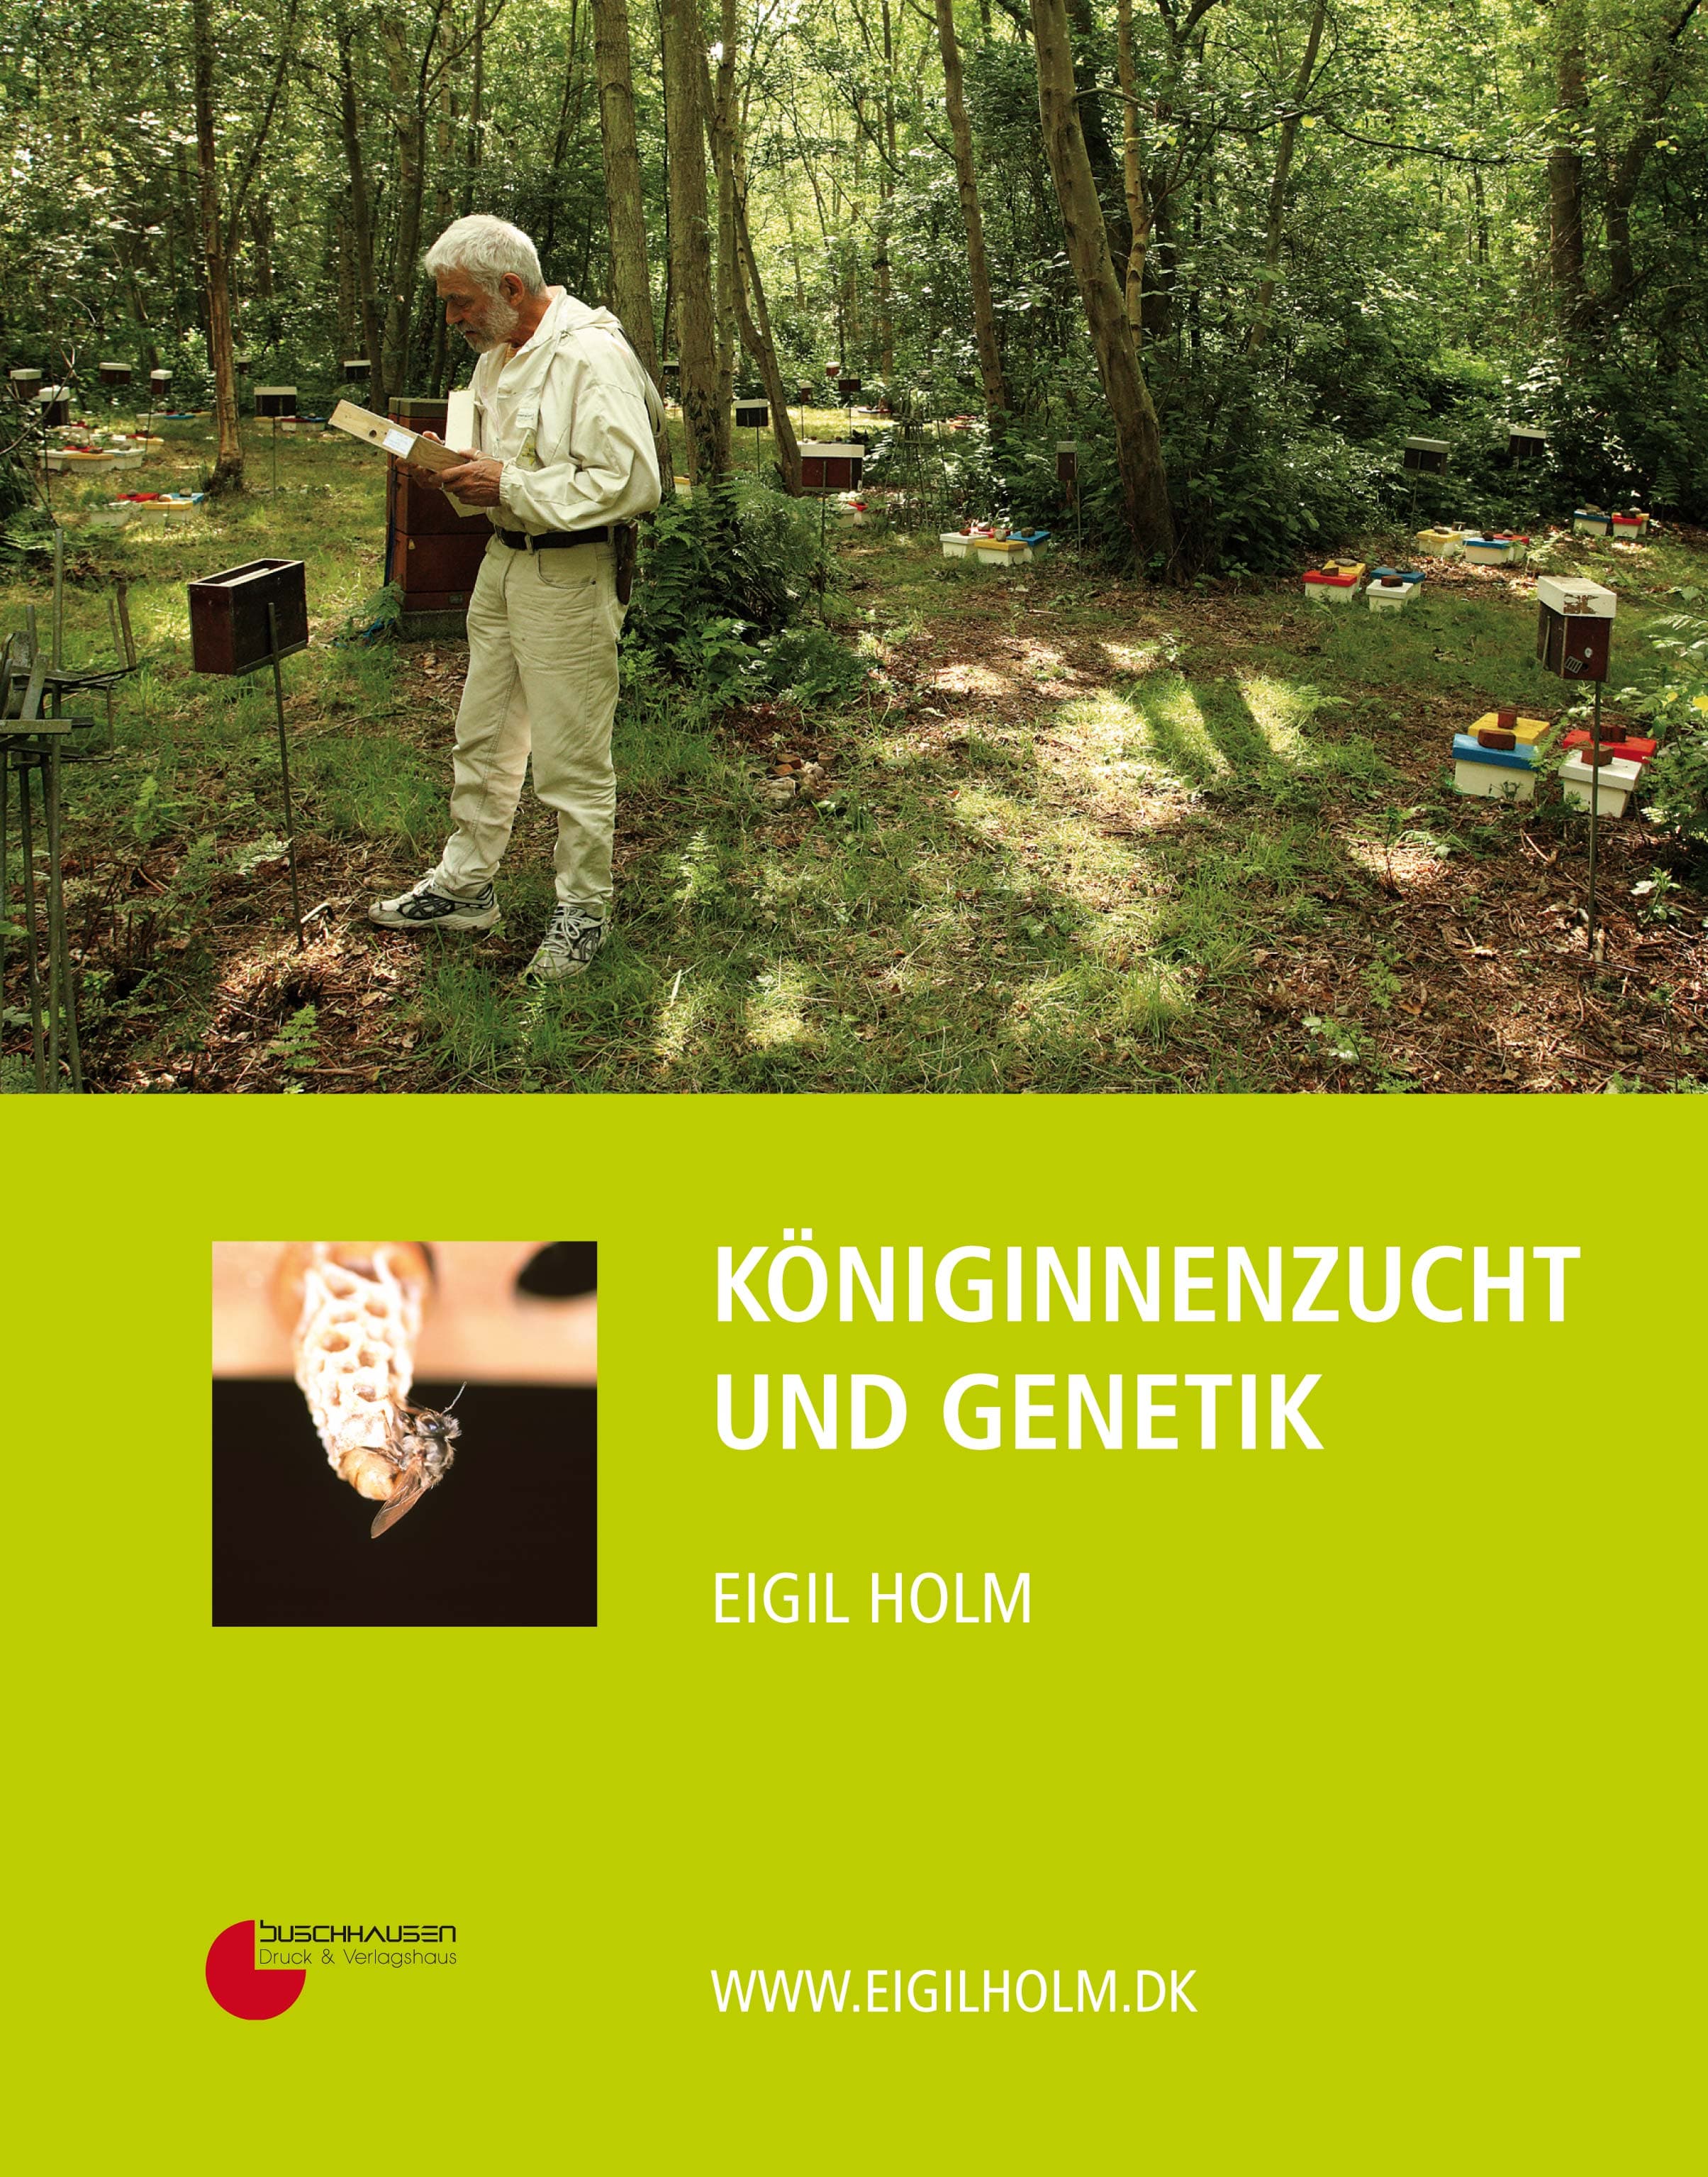 Königinnenzucht und Genetik, E. Holm, Buschhausen Verlag